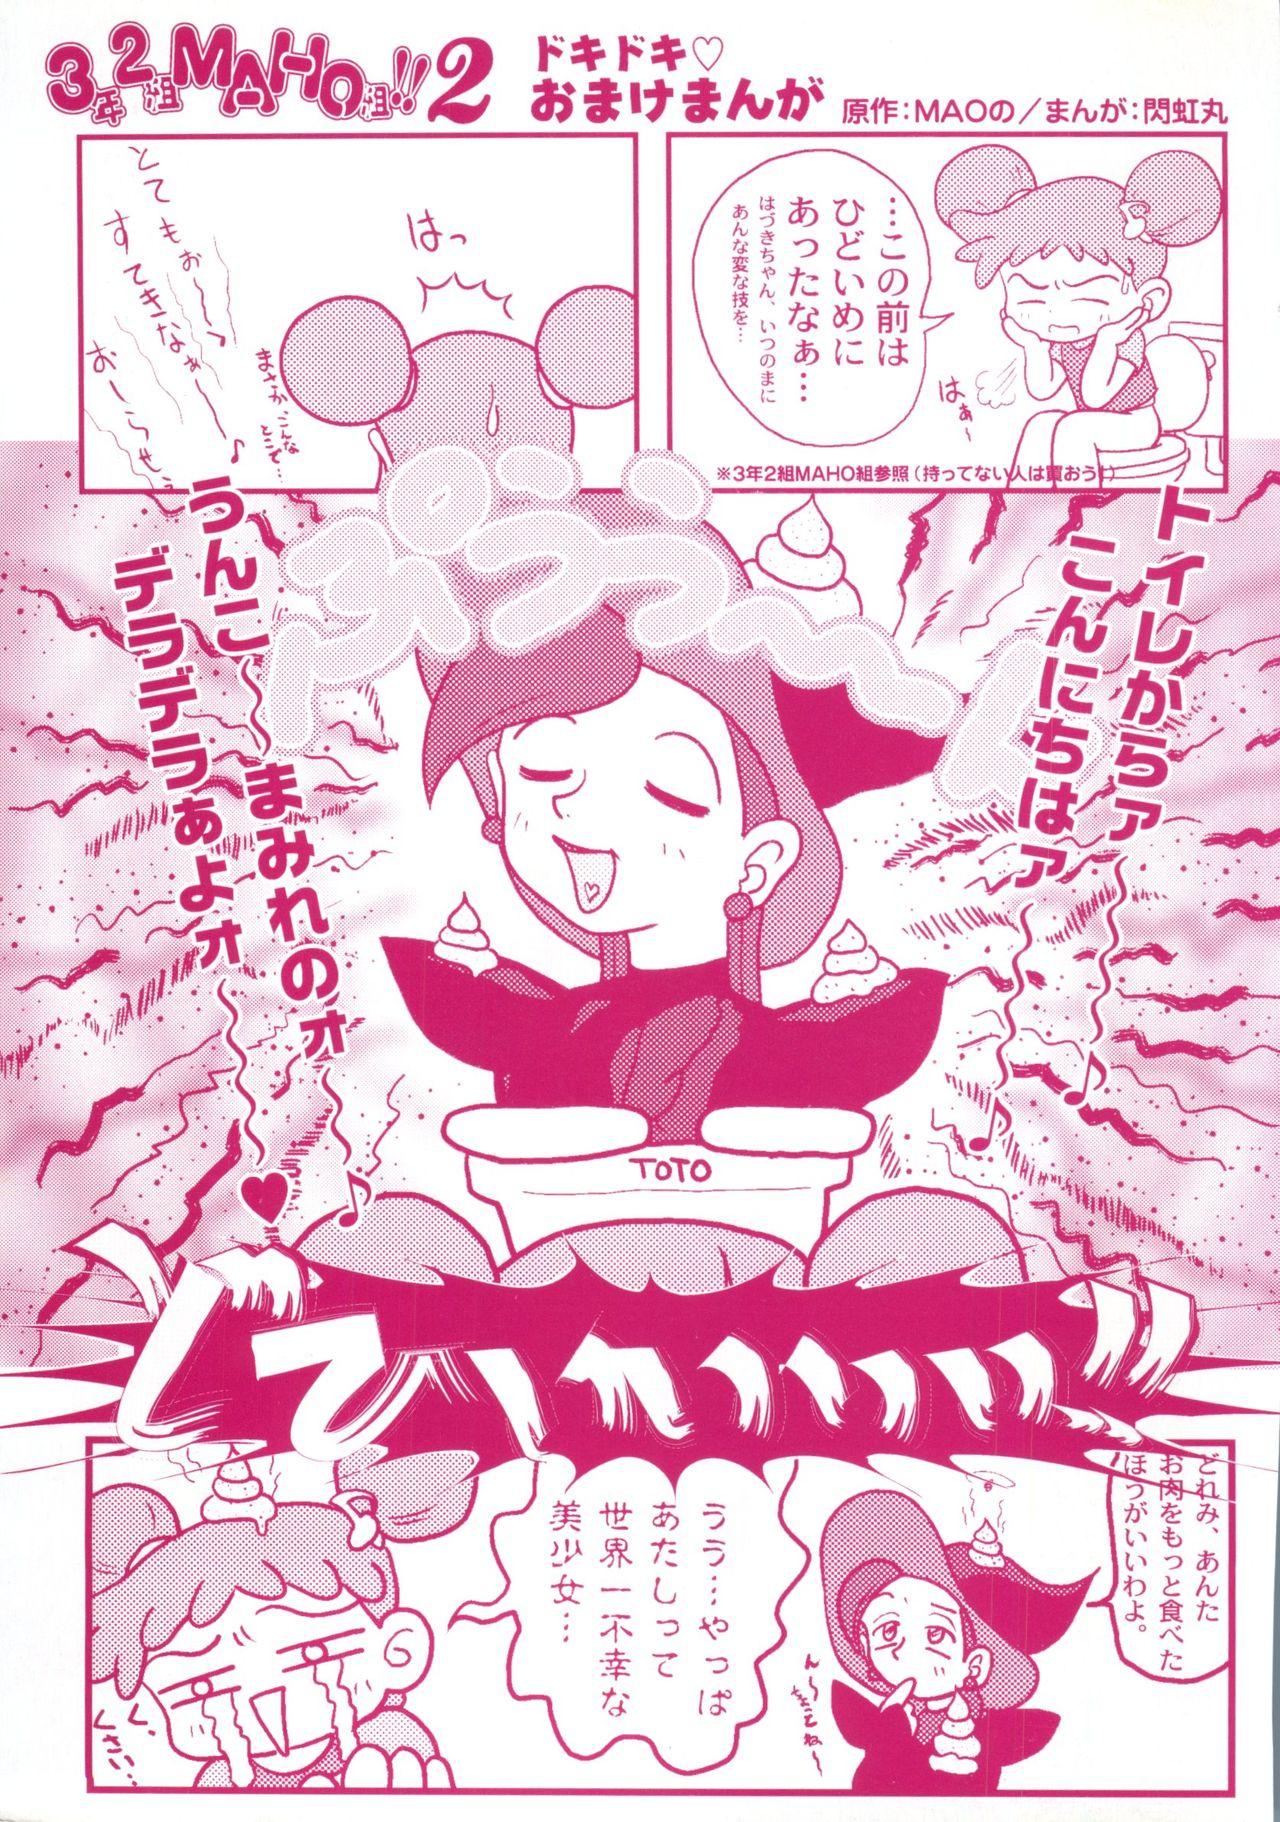 Gaybukkake 3 nen 2 Kumi Maho Gumi!! 2 - Ojamajo doremi Sexy - Page 2